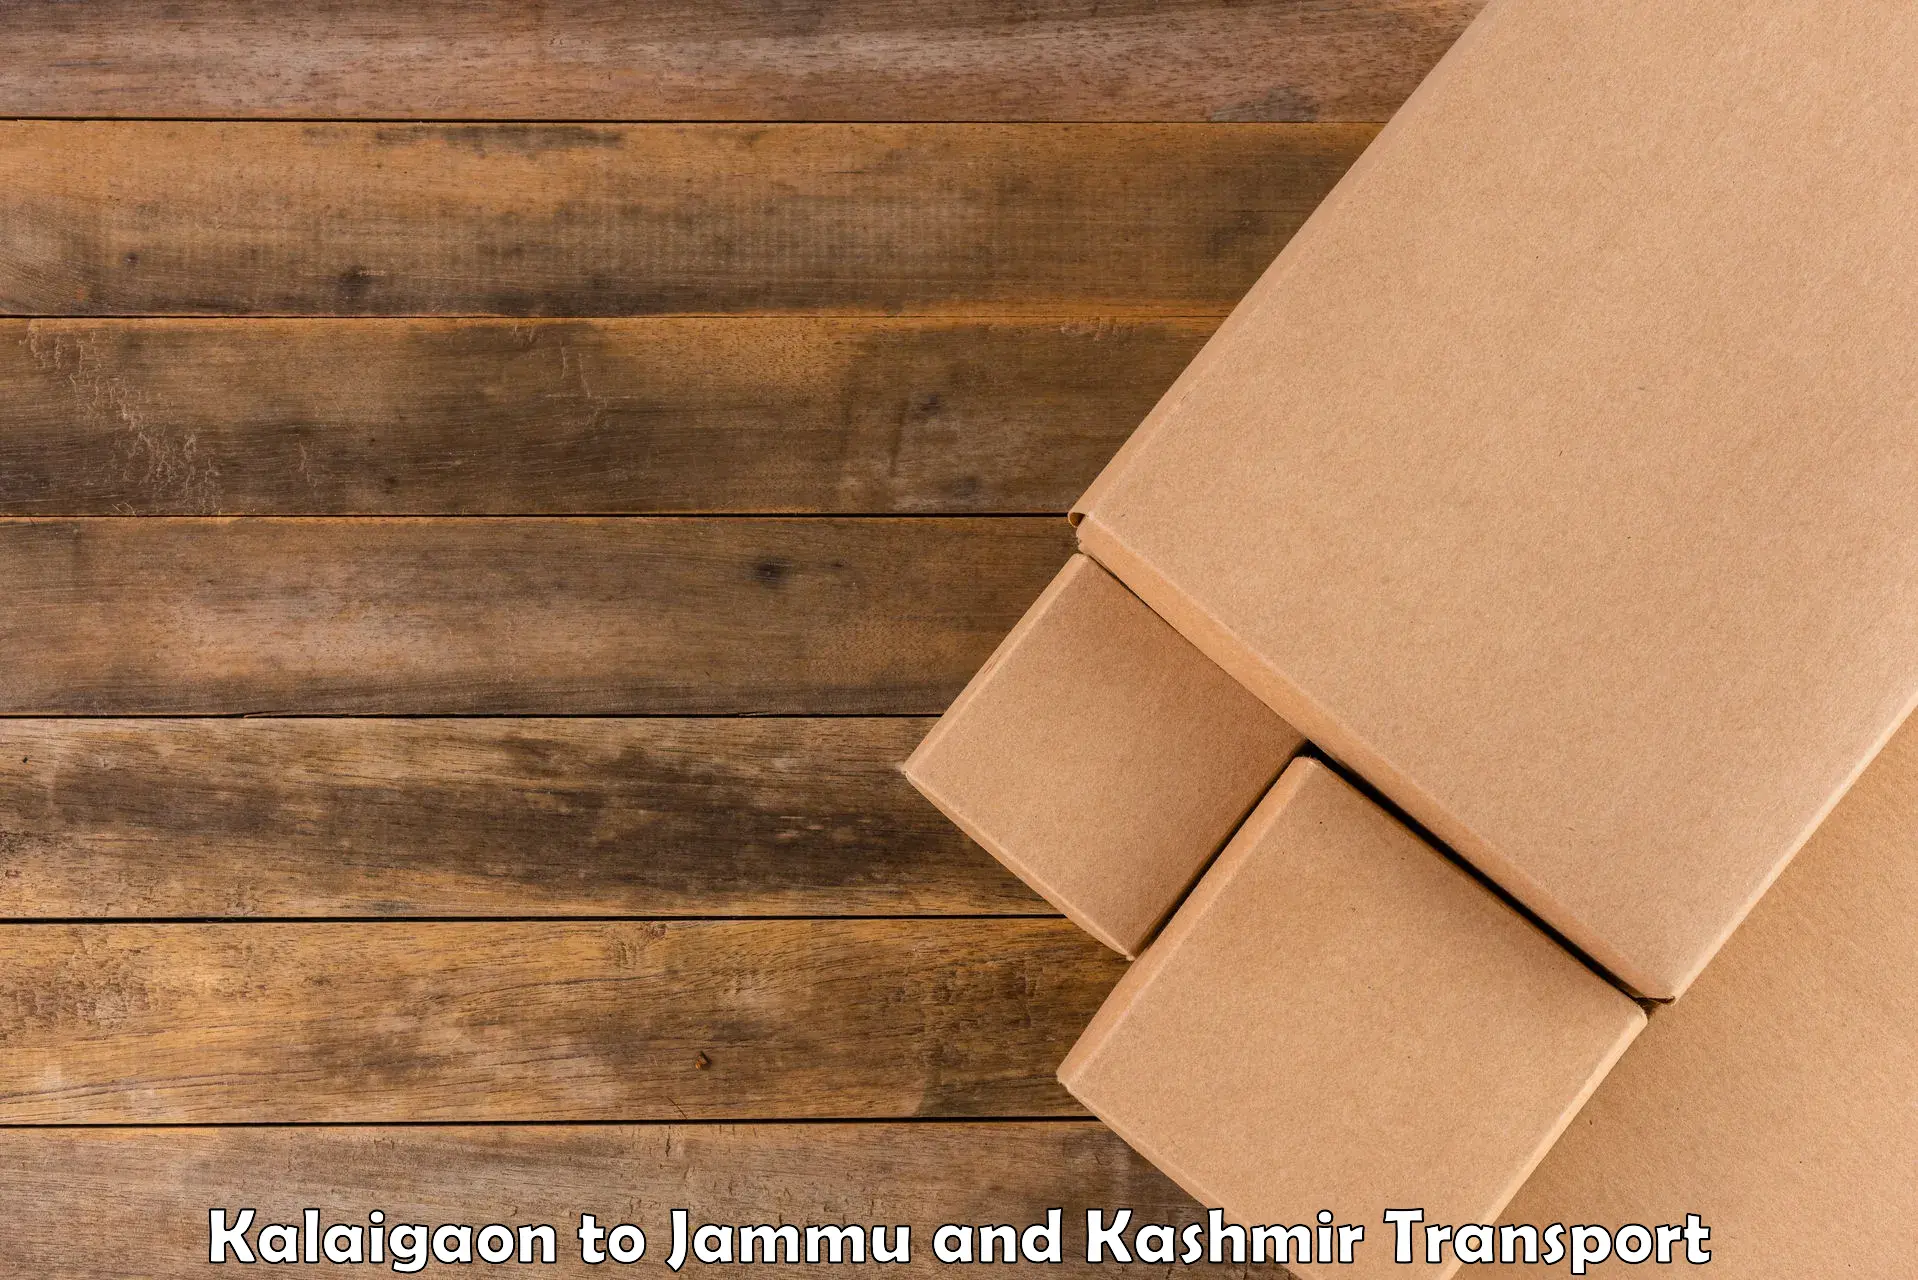 Shipping partner Kalaigaon to Bandipur